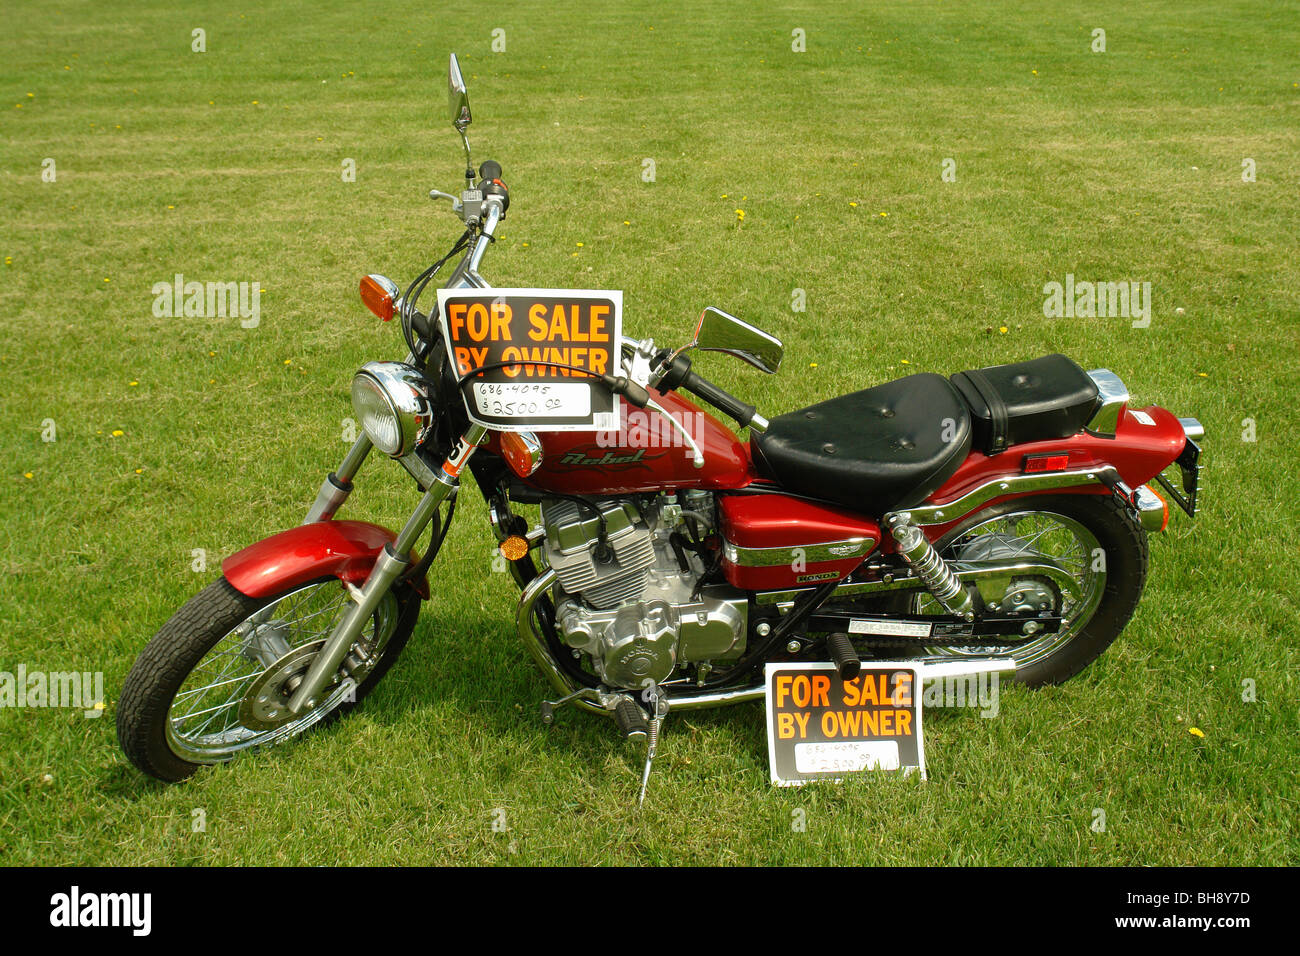 AJD64346, motociclo per la vendita dal proprietario nel cortile anteriore, VA, Virginia Foto Stock